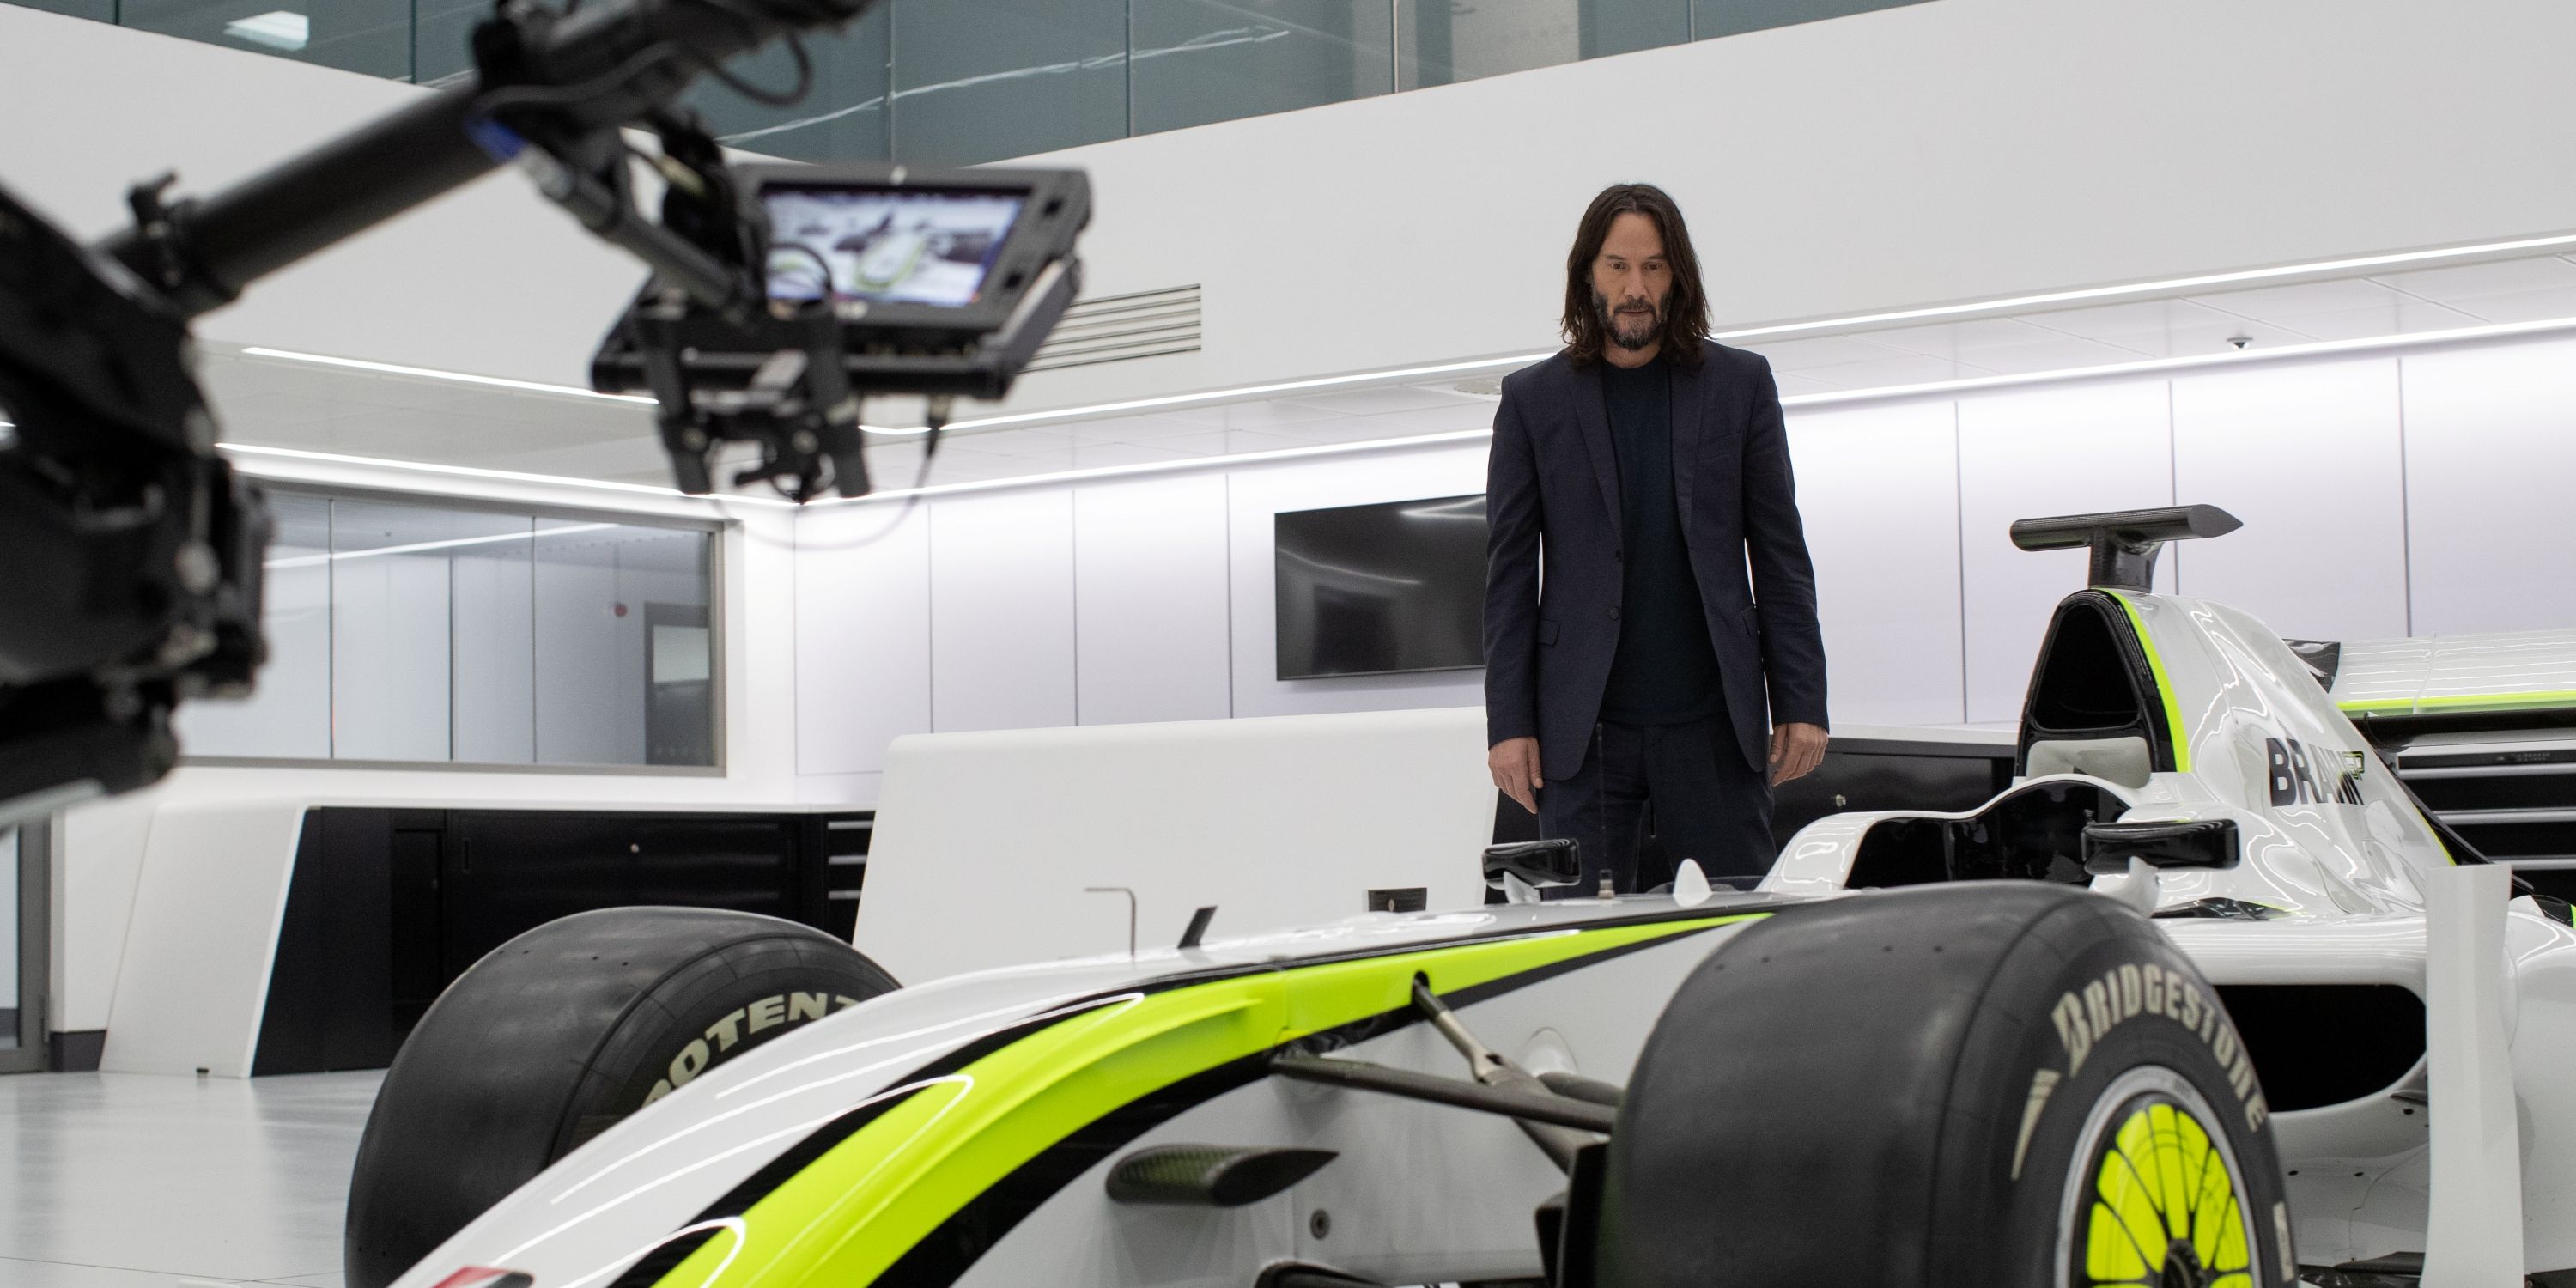 Presentador Keanu Reeves en la docuserie Brawn: La historia imposible de la Fórmula 1